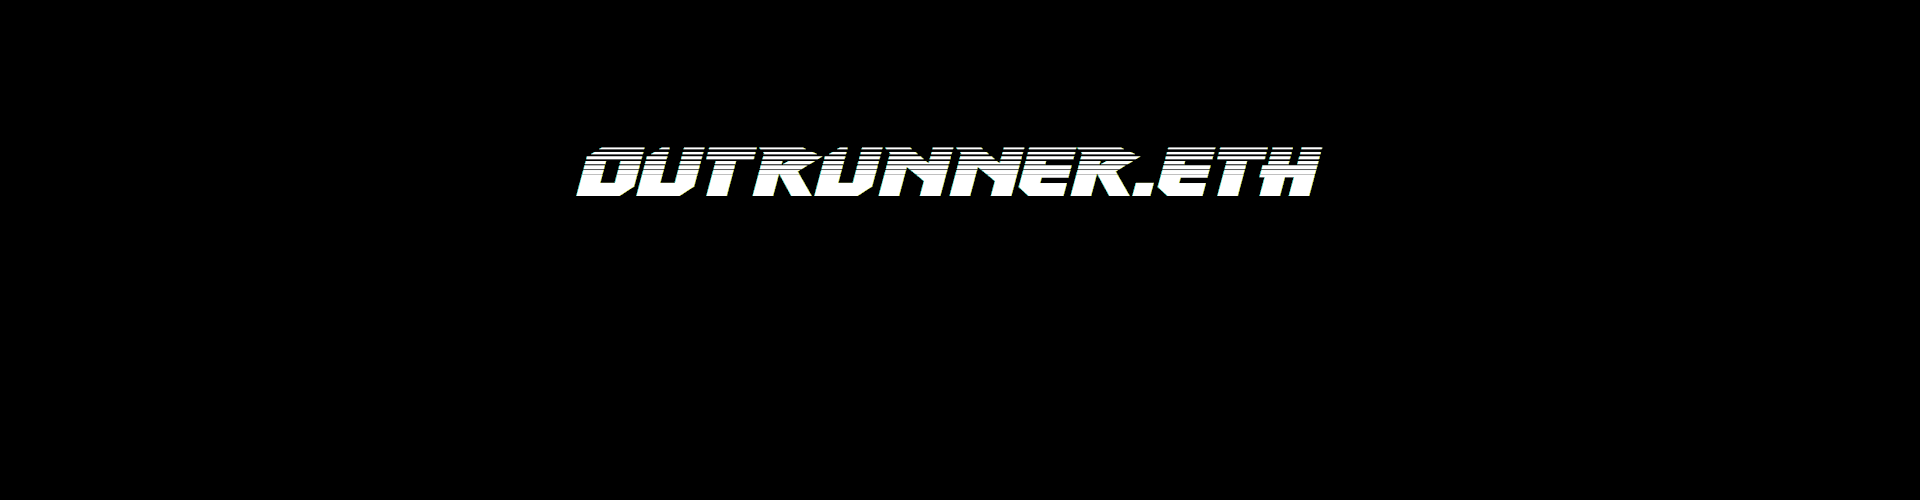 outrunner banner